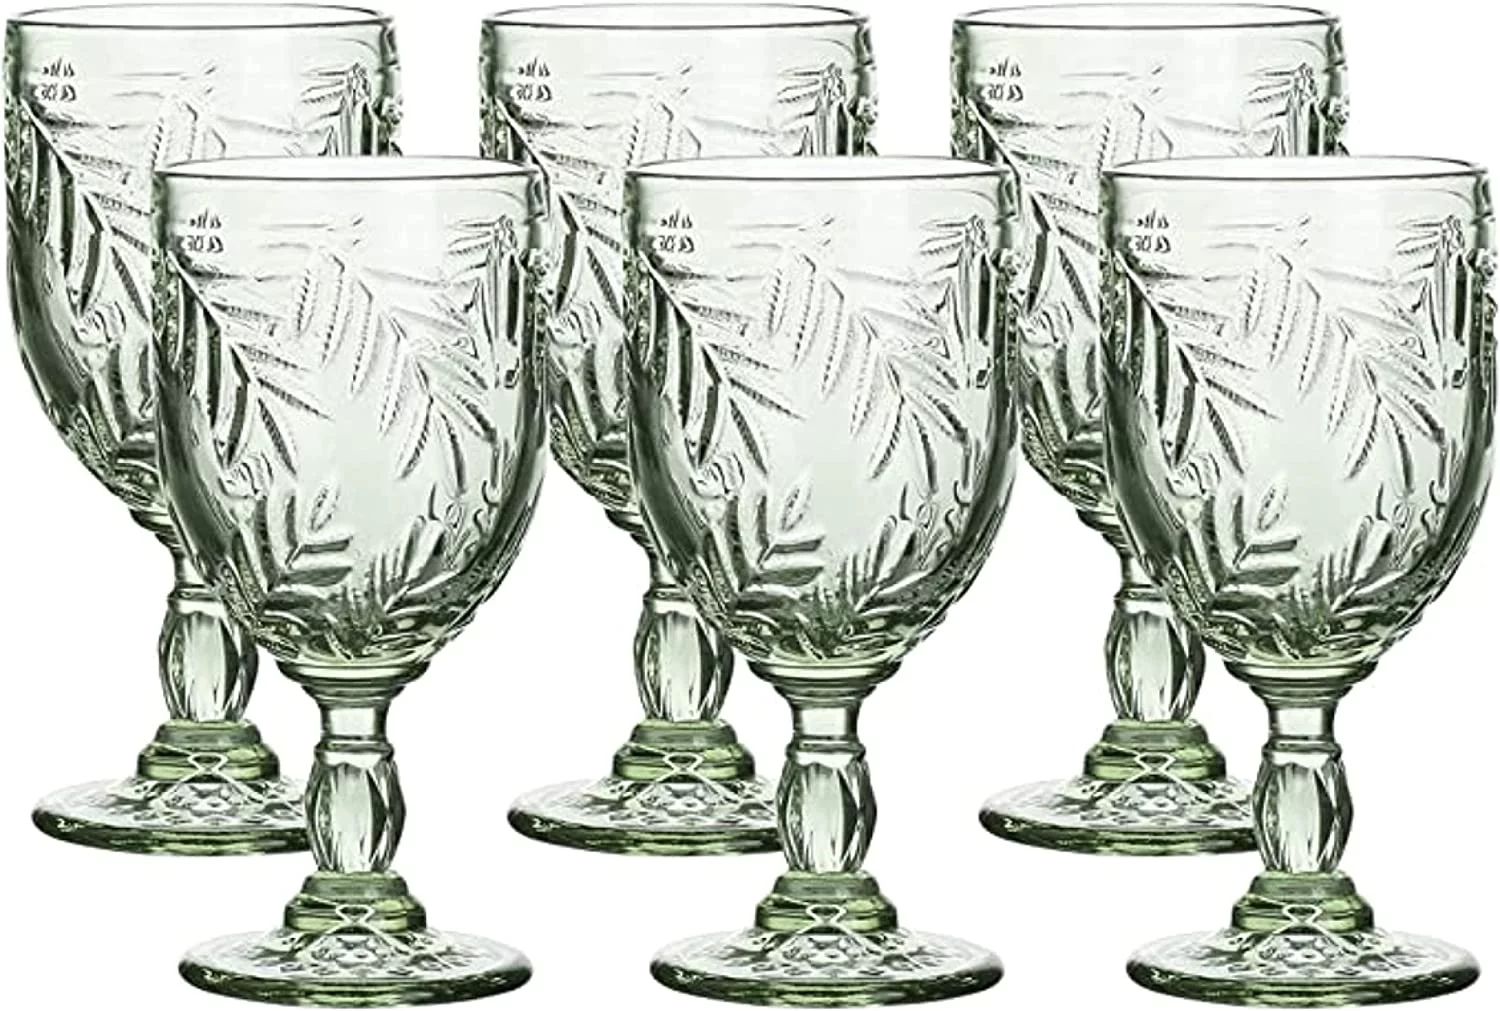 WHOLE HOUSEWARES Green Vintage Wine Glass Goblet Set - 6 Coloured 8.5 oz Embossed Design Glasses ... | Walmart (US)